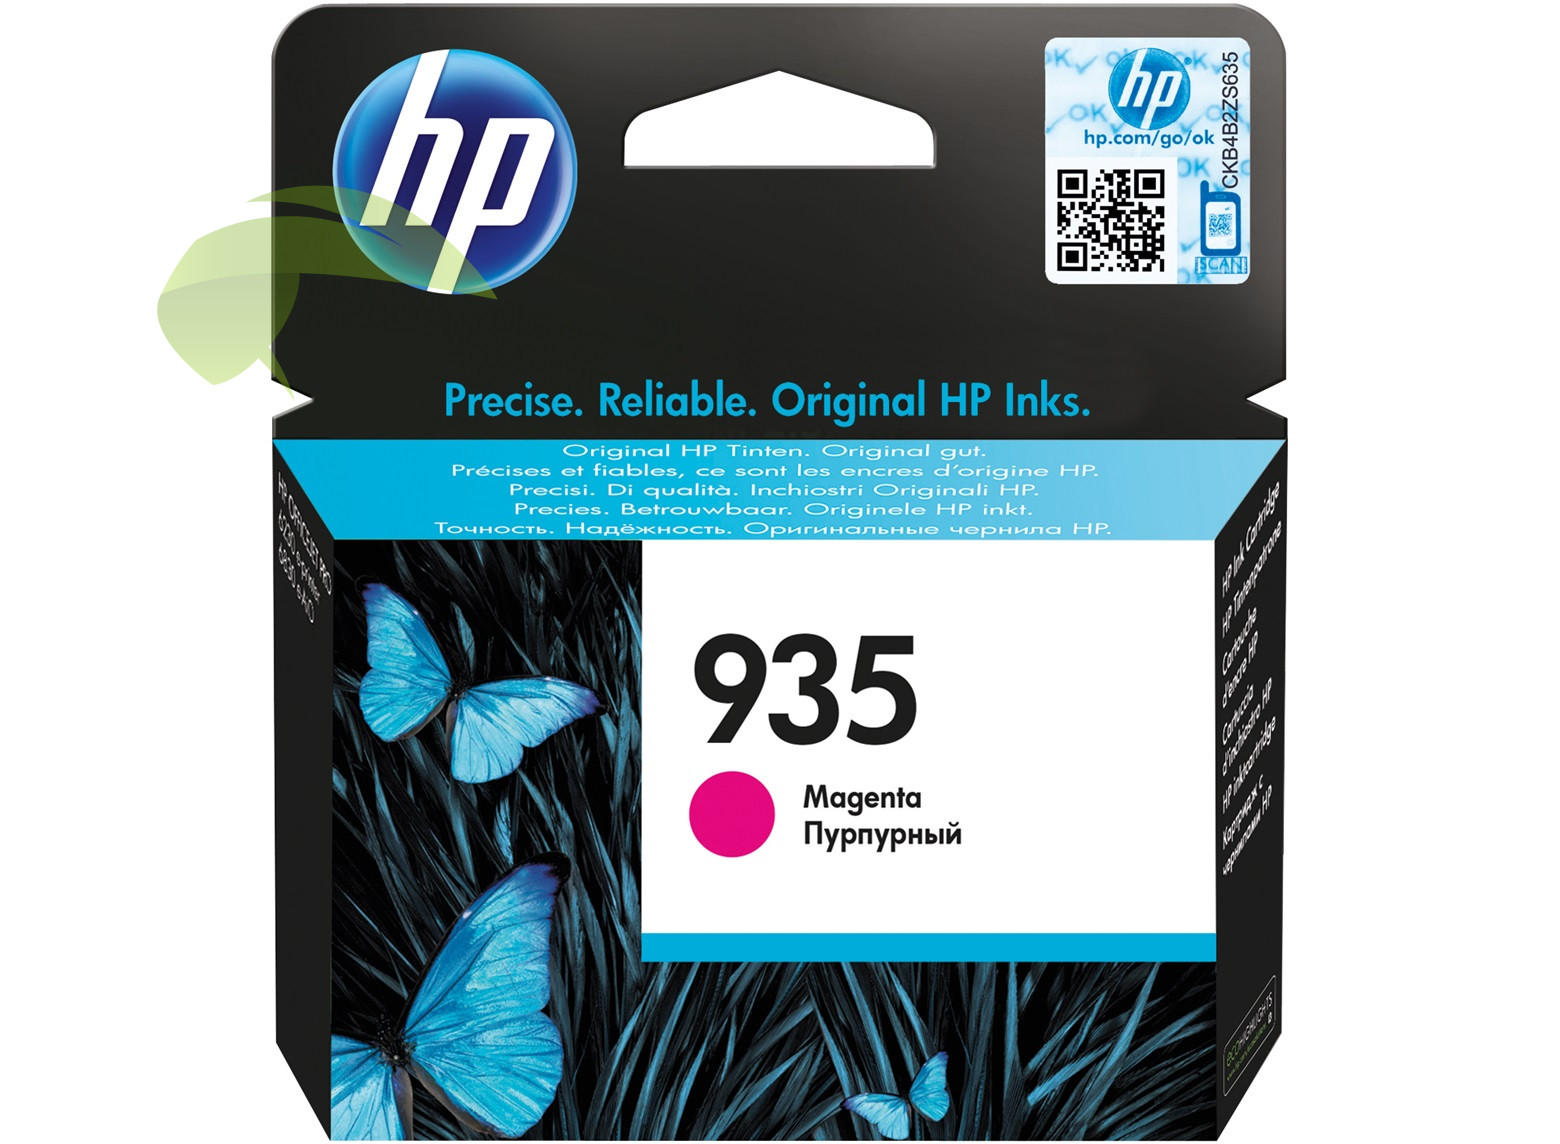 HP C2P21AE, HP 935 originální náplň magenta, OfficeJet Pro 6220/6230/6820/6830